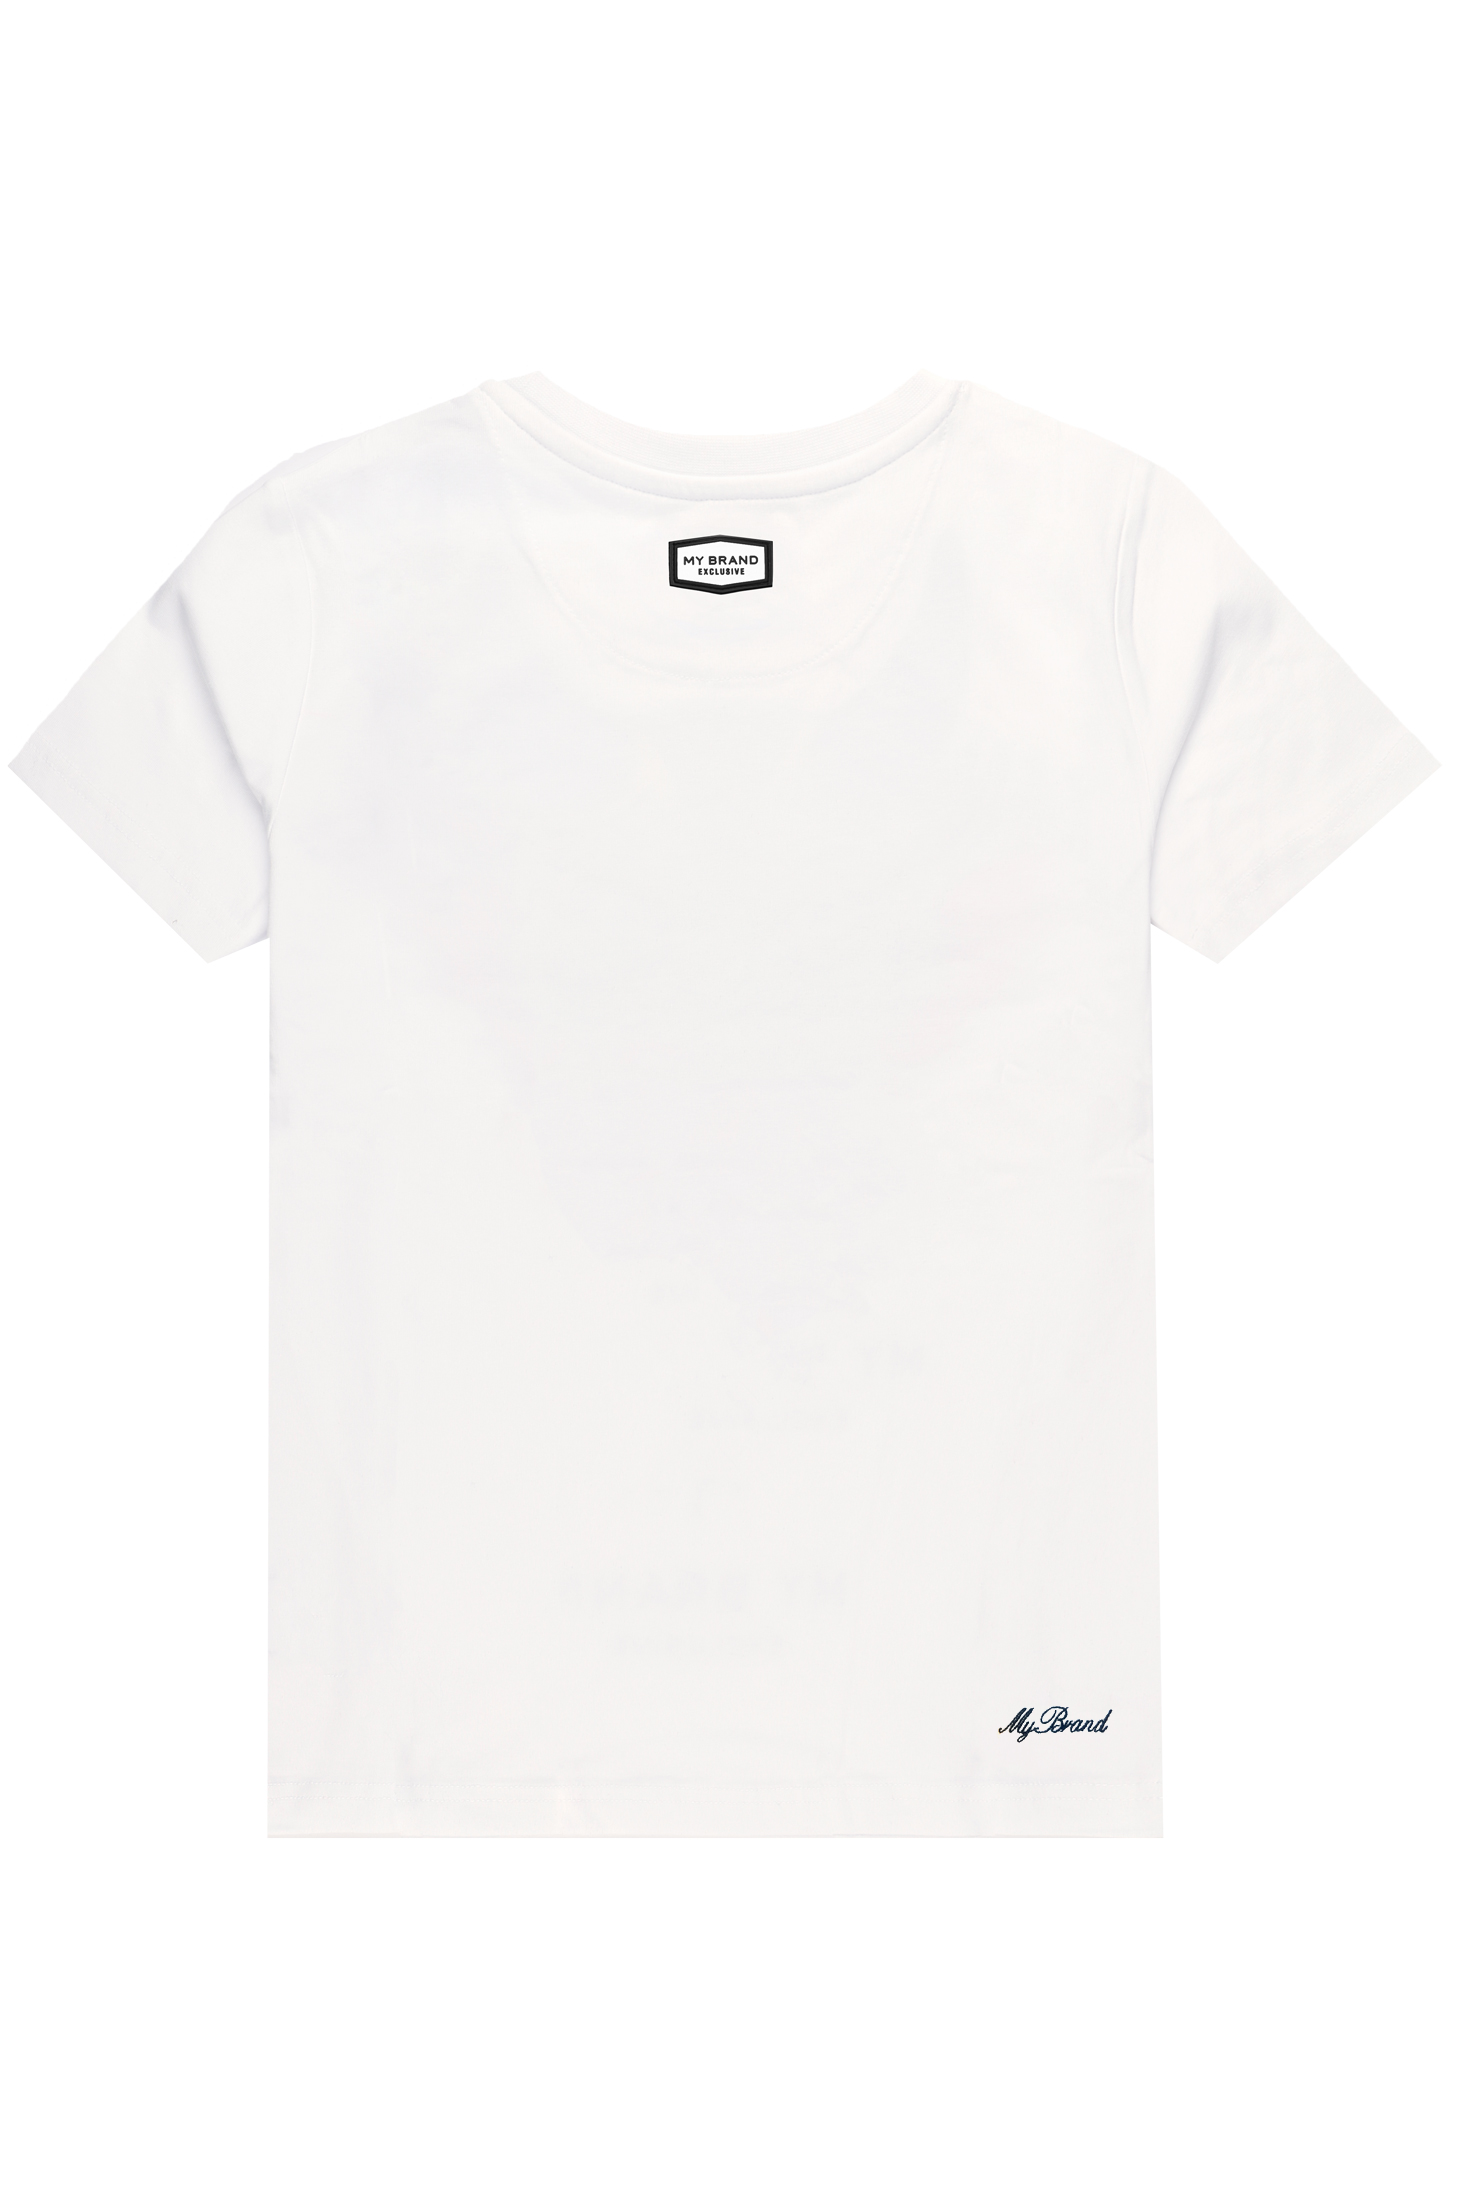 Samurai T-Shirt White